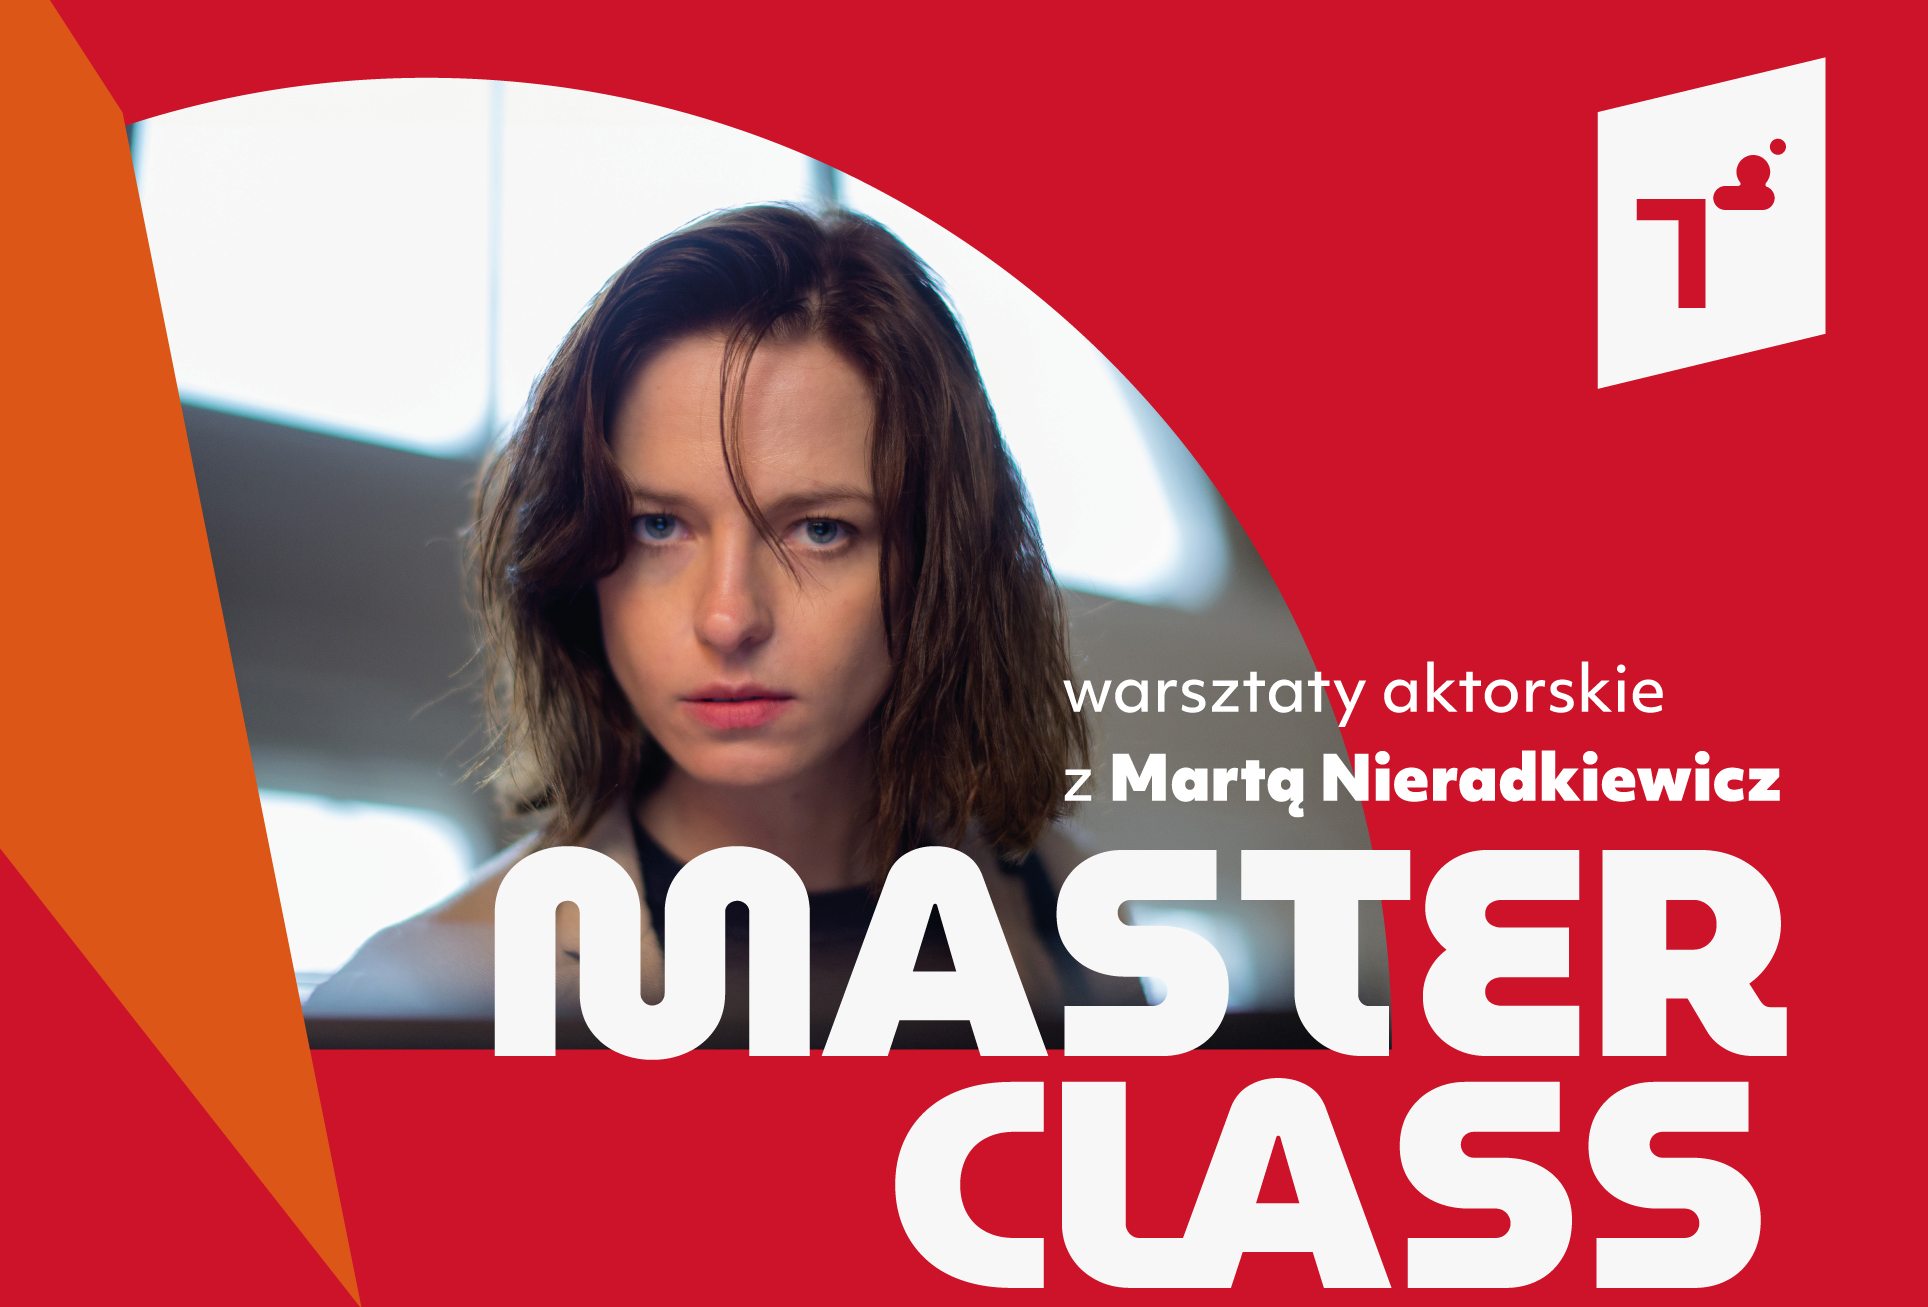 Biały napis - Master class warsztaty z Martą Nieradkiewicz - i zdjęcie aktorki, brunetki patrzącej wprost w obiektyw.